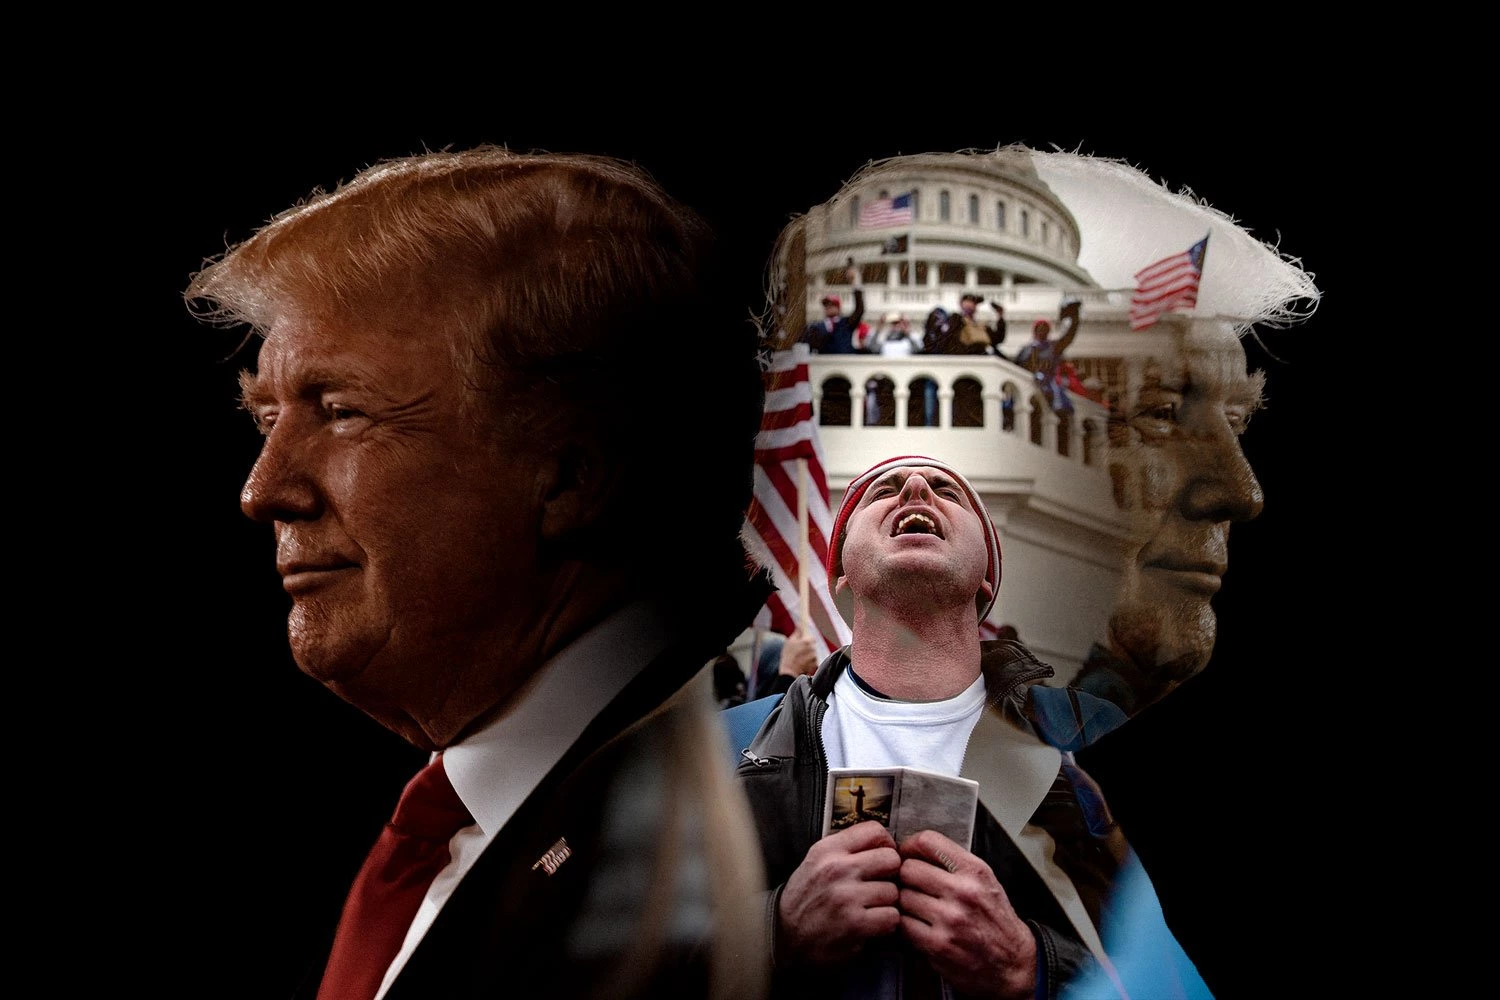 Eleições americanas: Donald Trump é visto como homem 'escolhido por Deus' para guiar os Estados Unidos na 'guerra cultural' que evangélicos radicais acreditam viver.